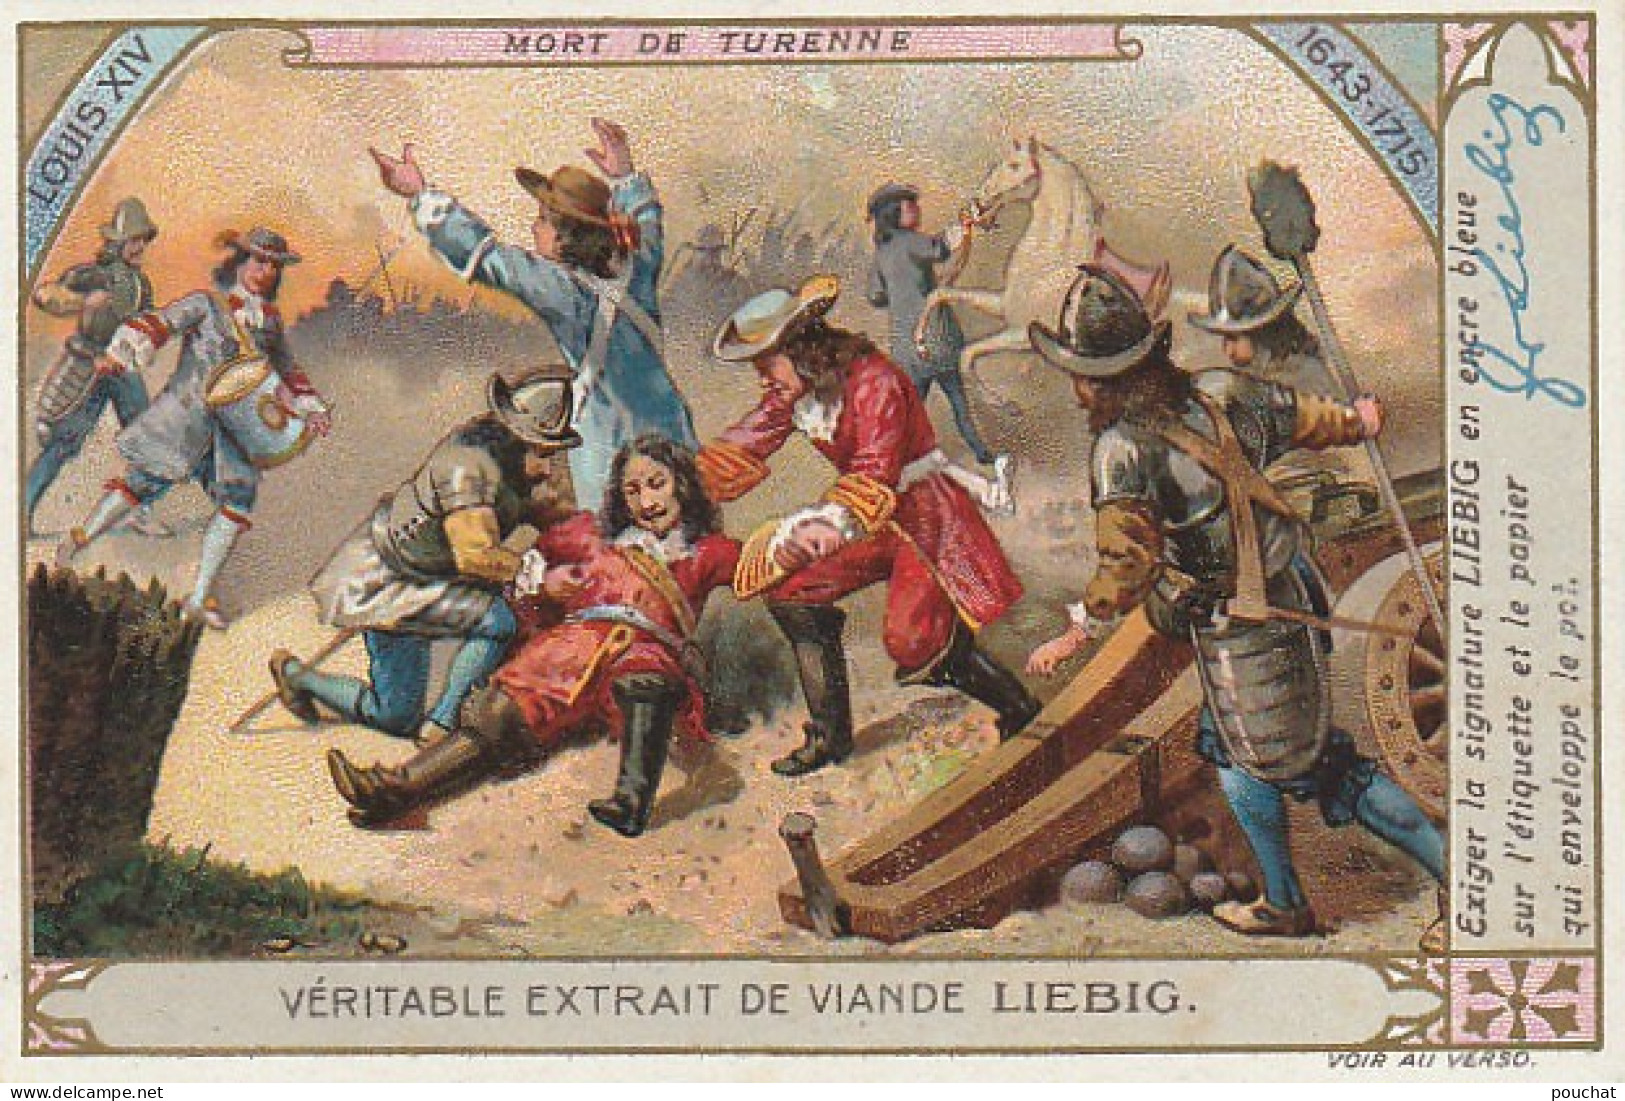 UR 2- L' HISTOIRE DE FRANCE : LOUIS XIV ( LA FRONDE , COLBERT , MASQUE DE FER )- LOT DE 6 CHROMOS LIEBIG AVEC ENVELOPPE 